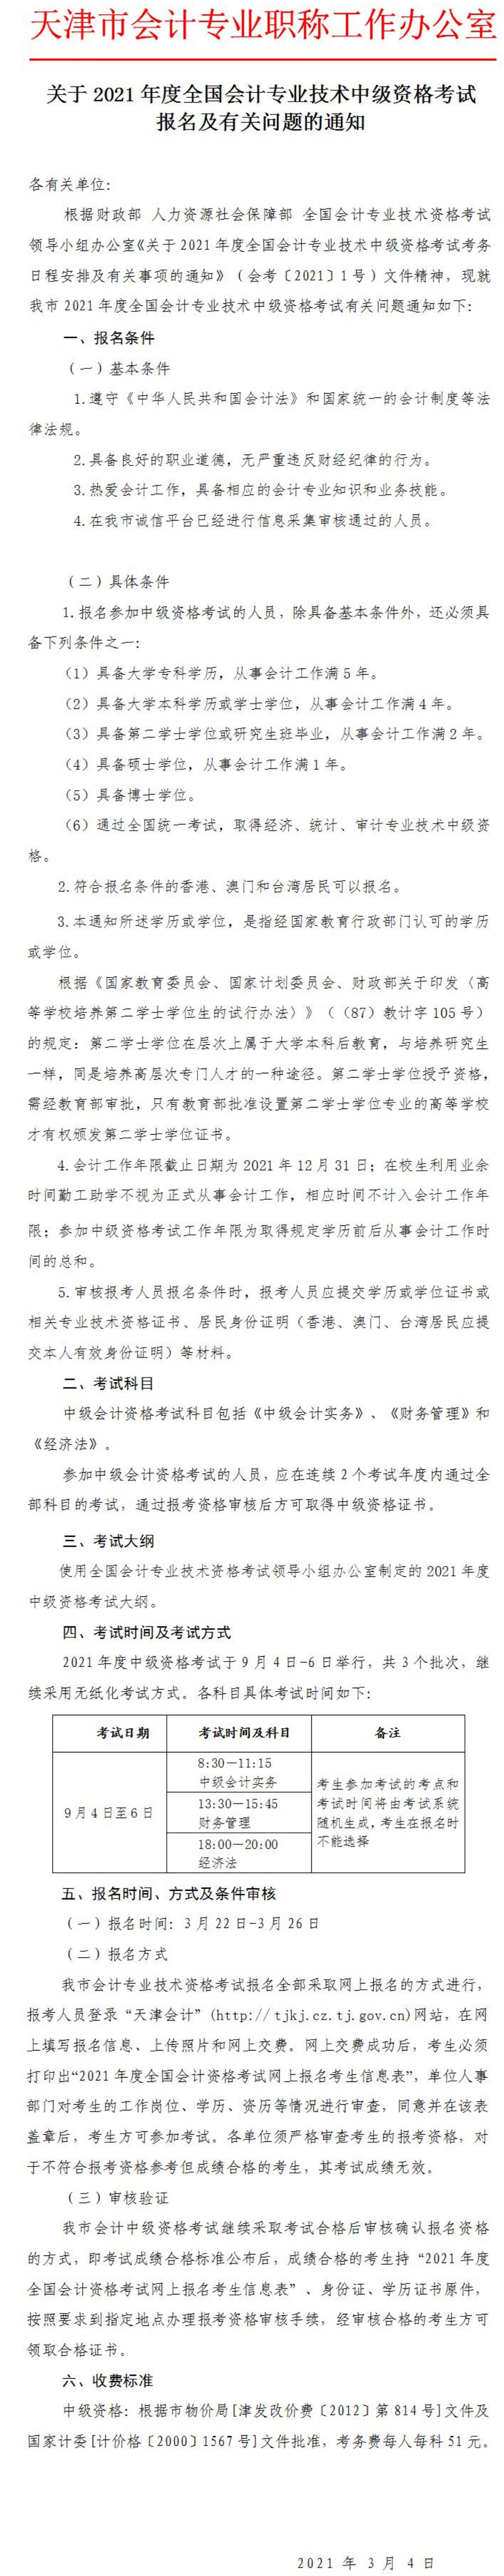 2021年天津中级会计职称考试报名官方公告